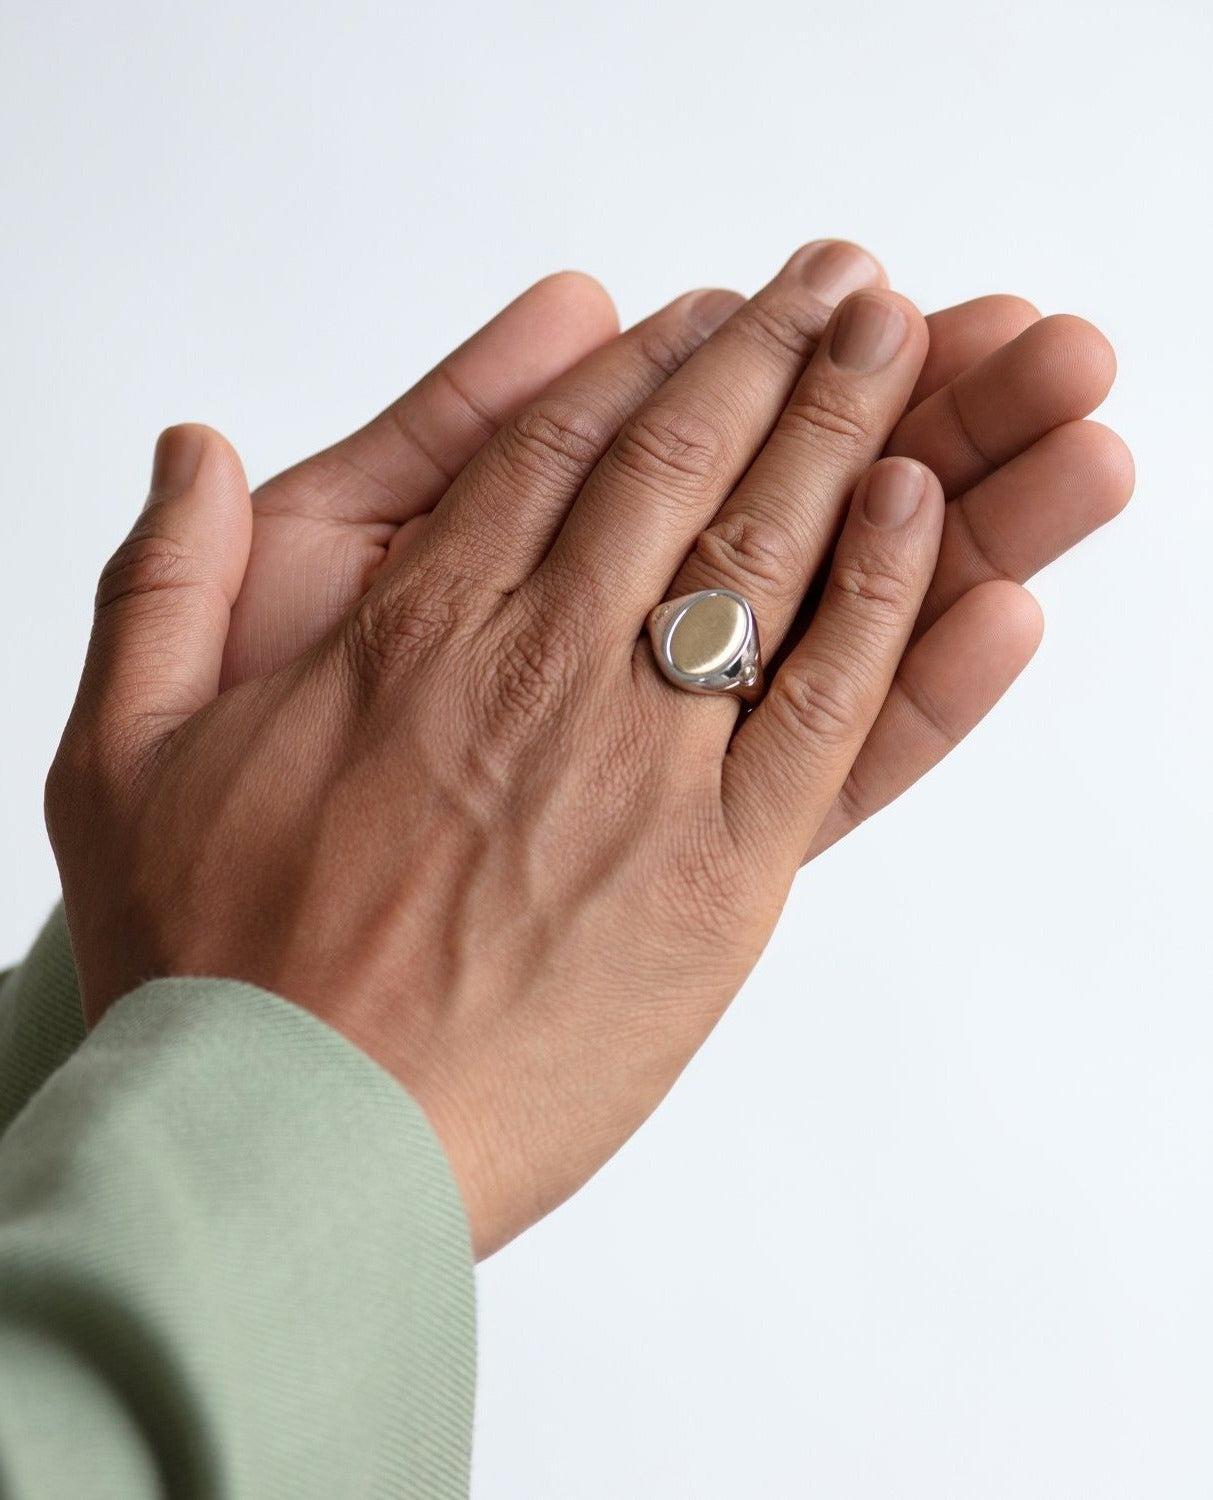 Der atemberaubende zweifarbige Goldring LODESTAR ist der Siegelring von Rockford. Der LODESTAR kann als Fingerring, als religiöses Schmuckstück oder als einzigartiger Designer-Modering getragen werden. Versandfertige Ringe sind vorproduzierte,